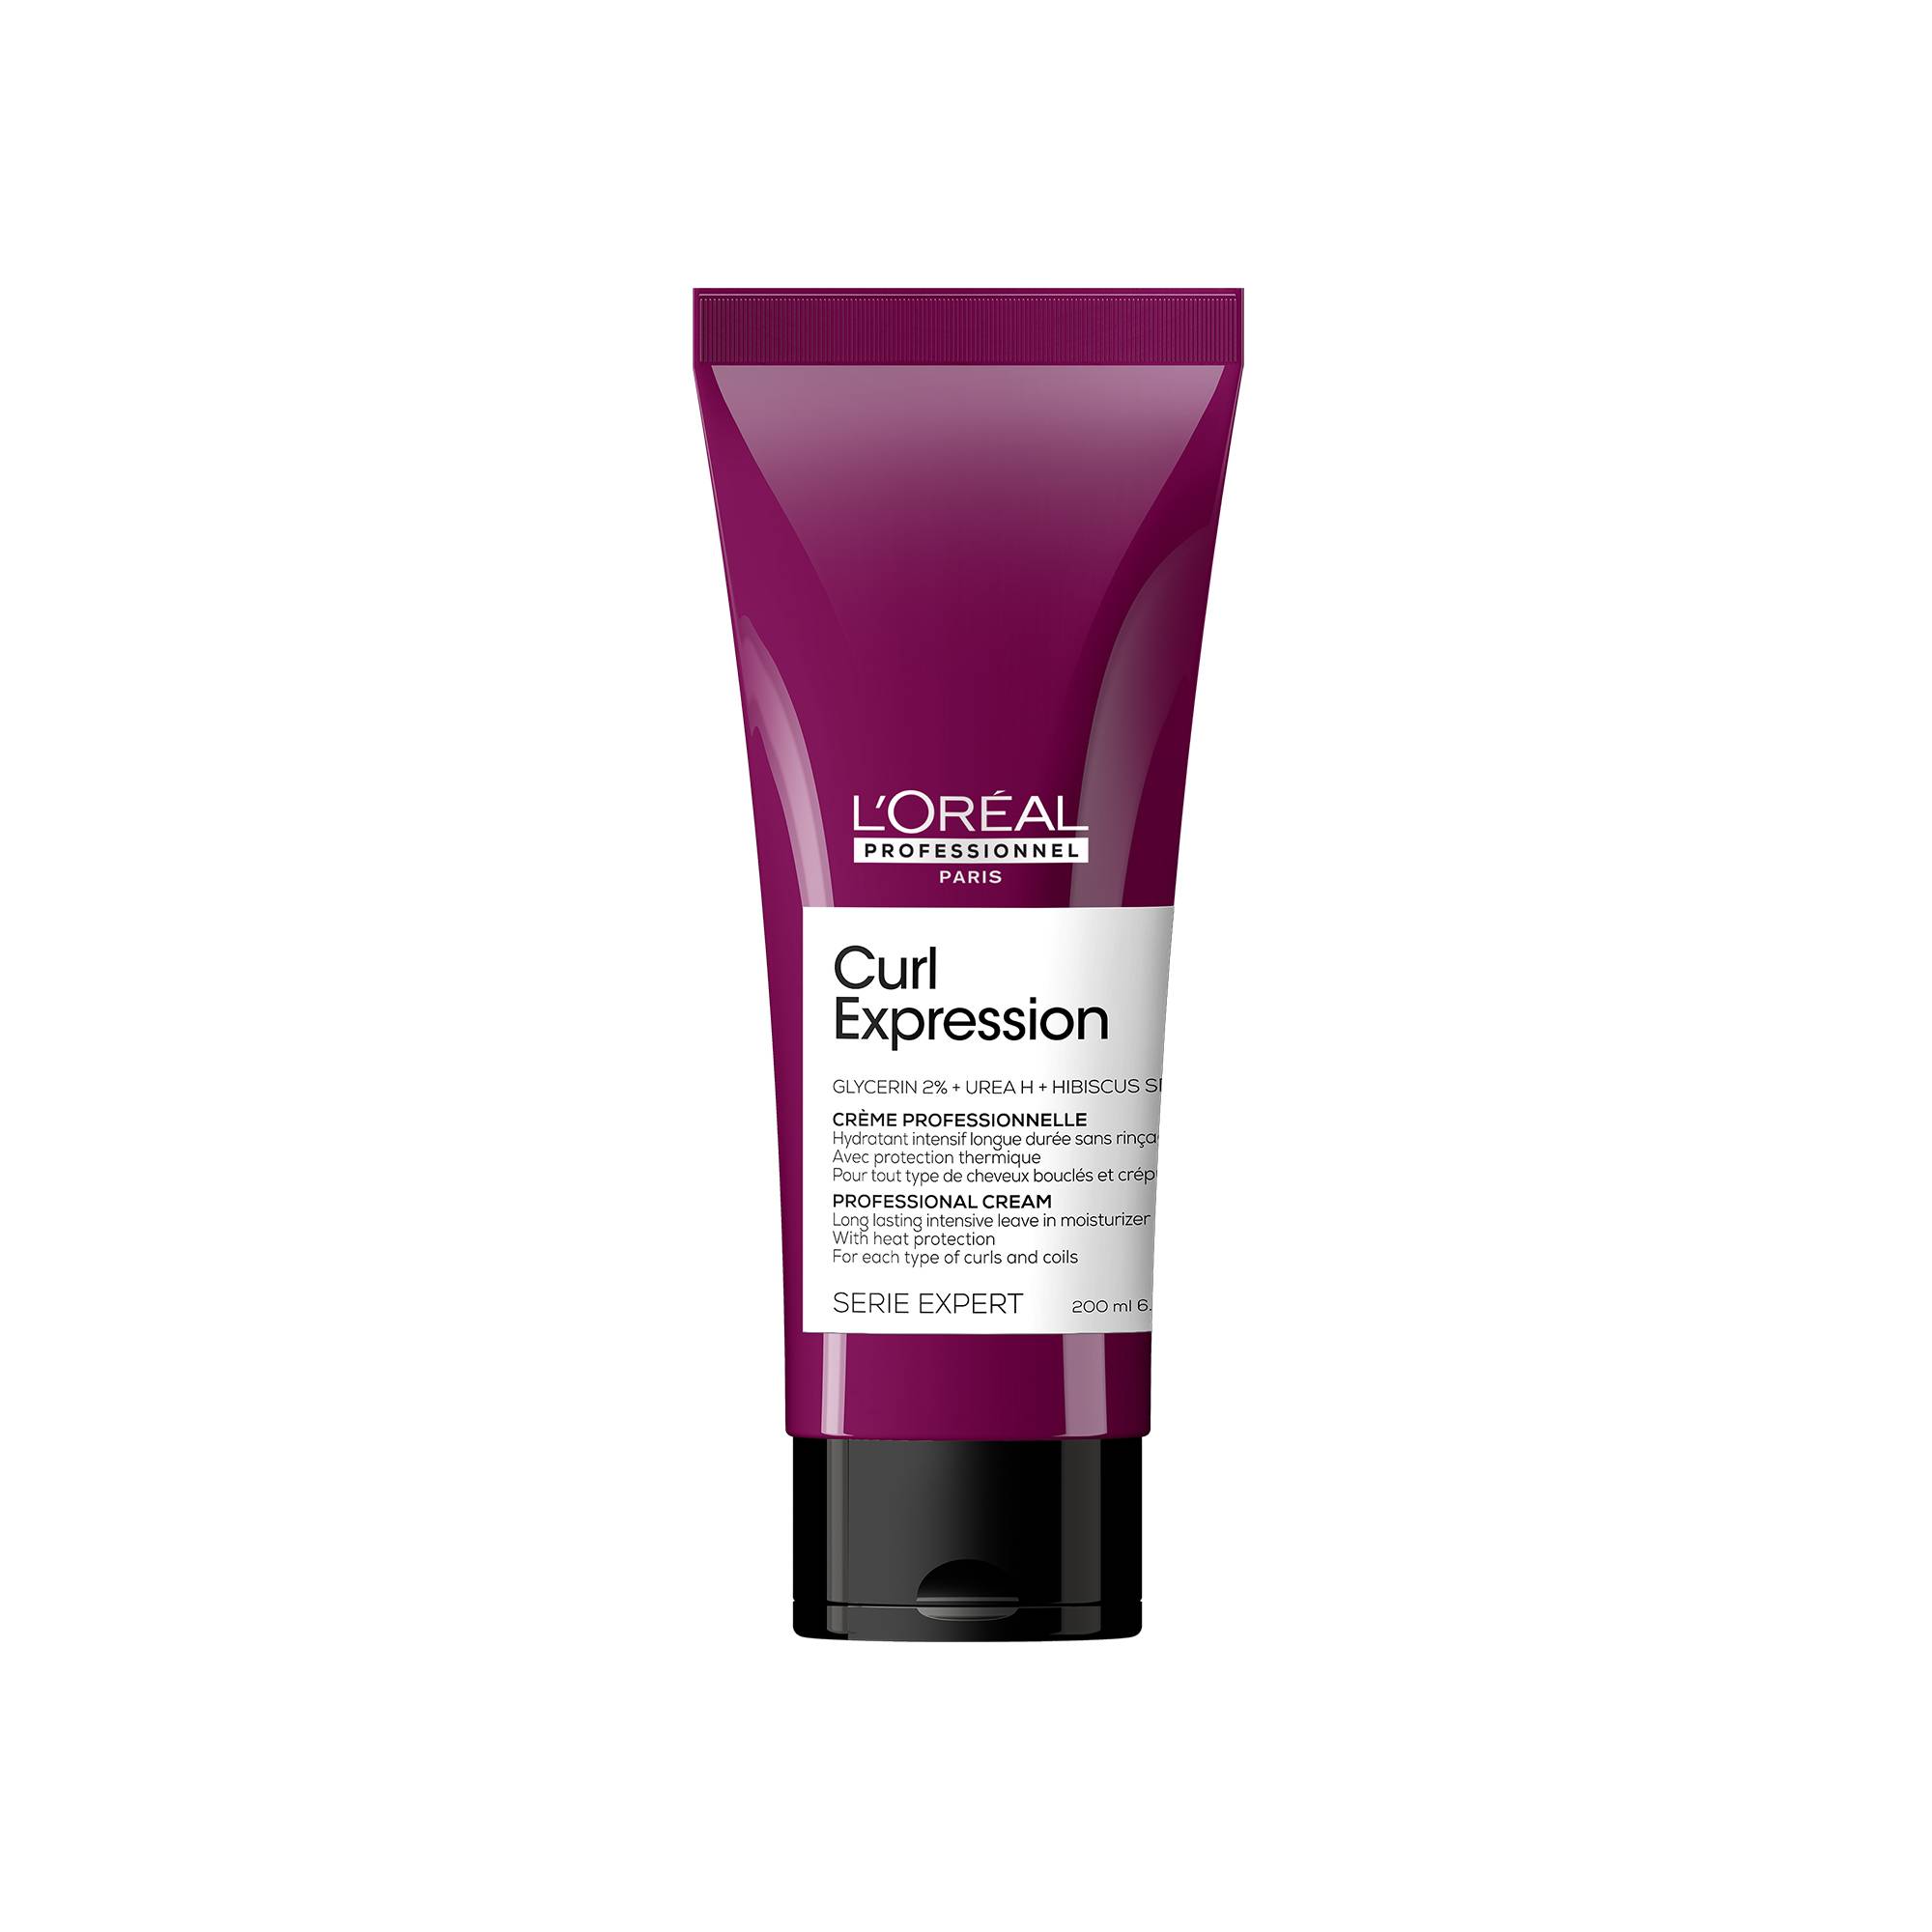 Crème hydratante intensive longue durée Curl Expression de la marque L'Oréal Professionnel Contenance 200ml - 1